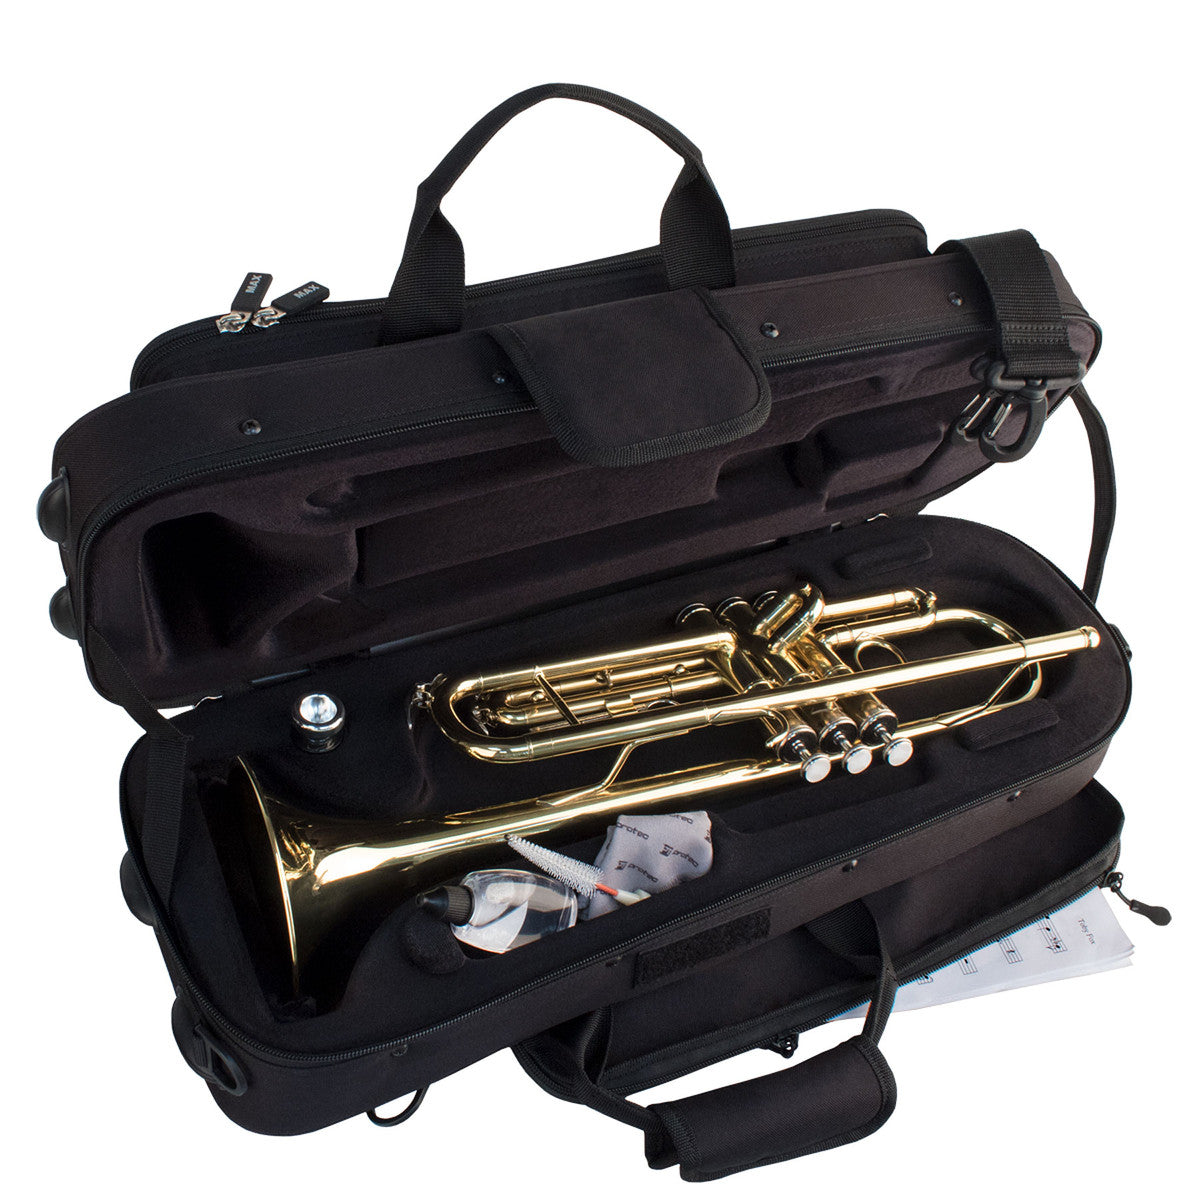 Protec Trumpet Case - MAX, Contoured